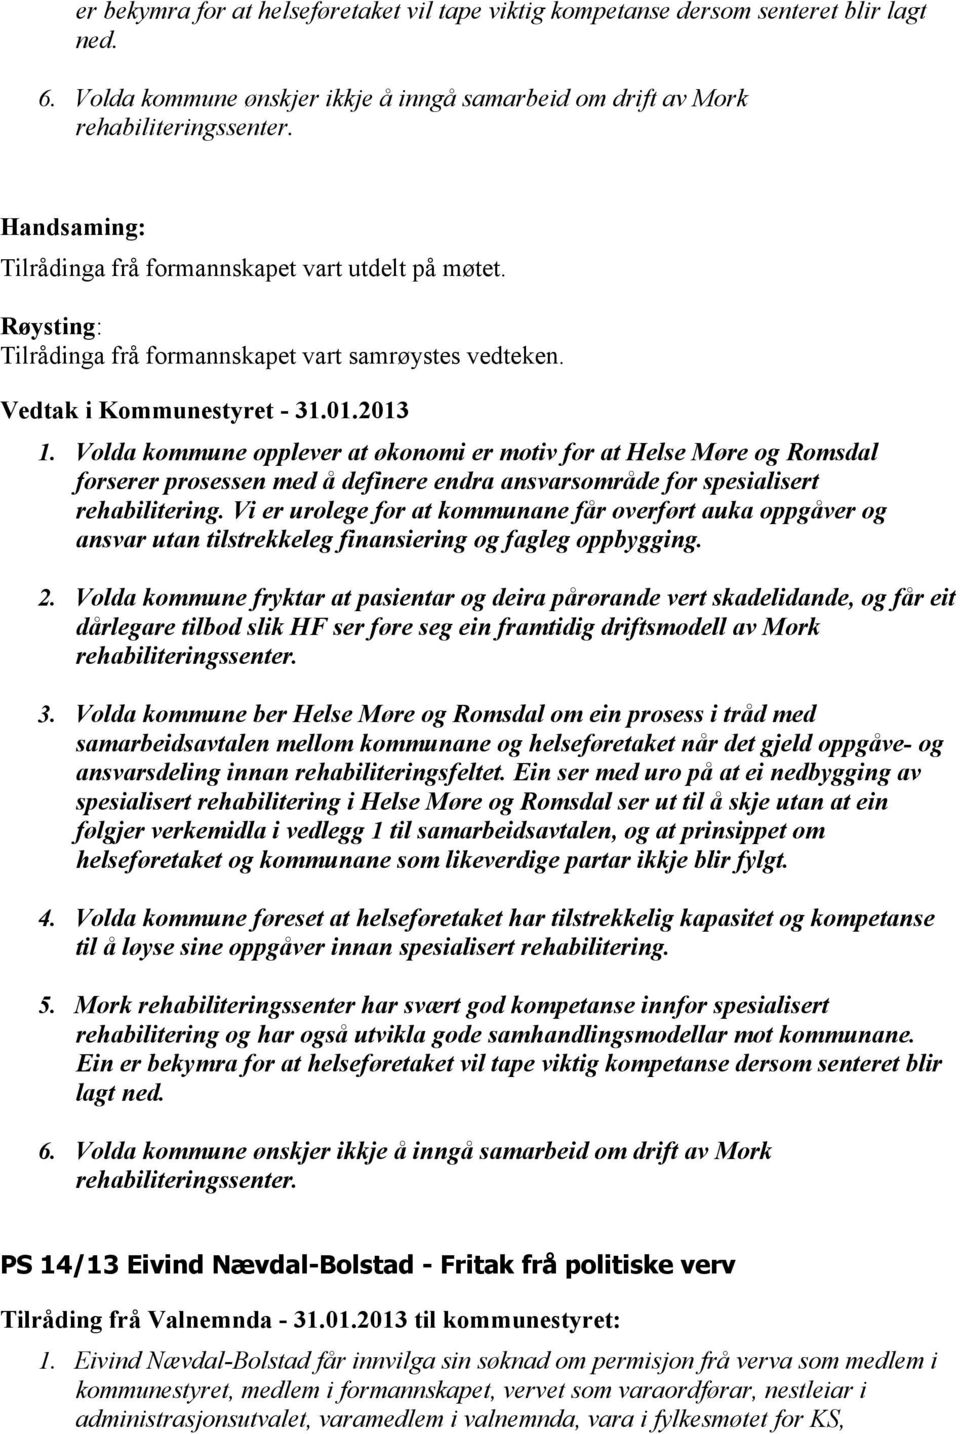 Volda kommune opplever at økonomi er motiv for at Helse Møre og Romsdal forserer prosessen med å definere endra ansvarsområde for spesialisert rehabilitering.